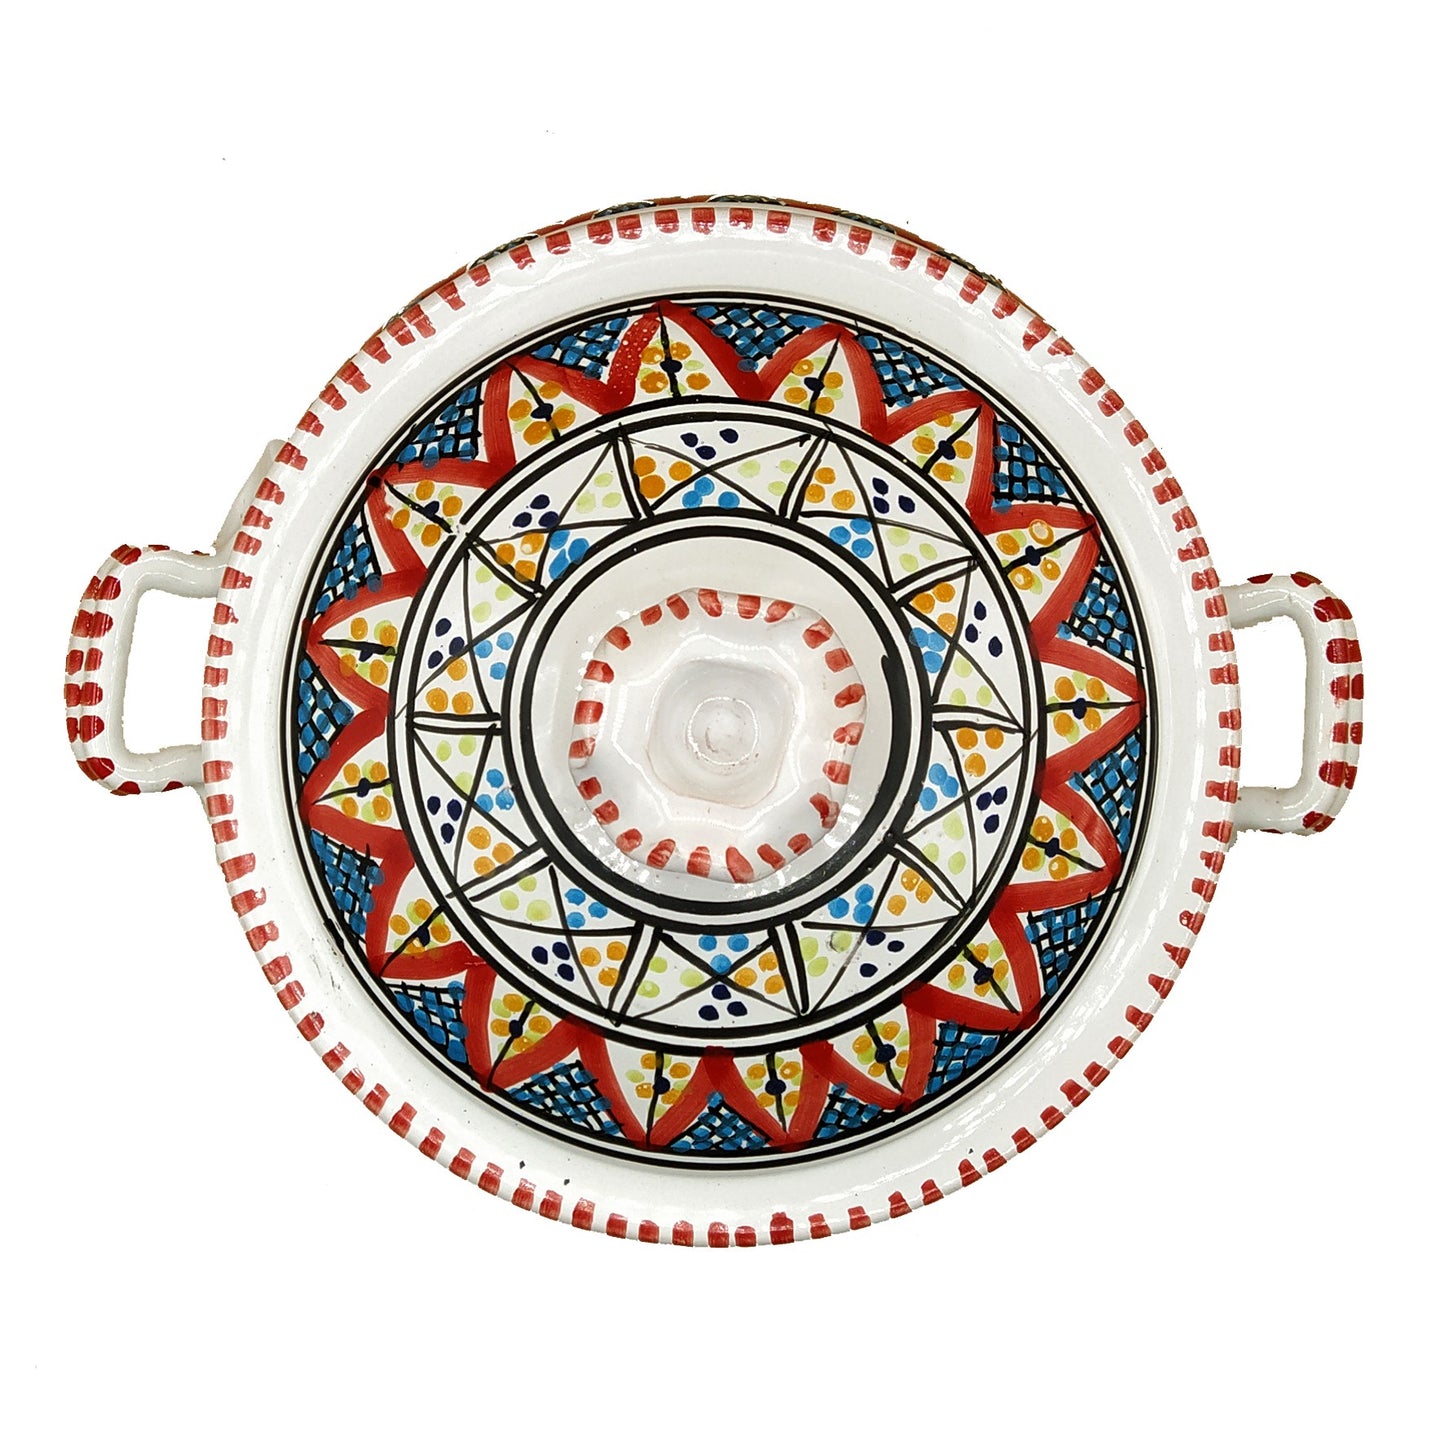 Pentola da Servizio Zuppiera Ceramica Etnica Tunisina Marocchina 1401211136